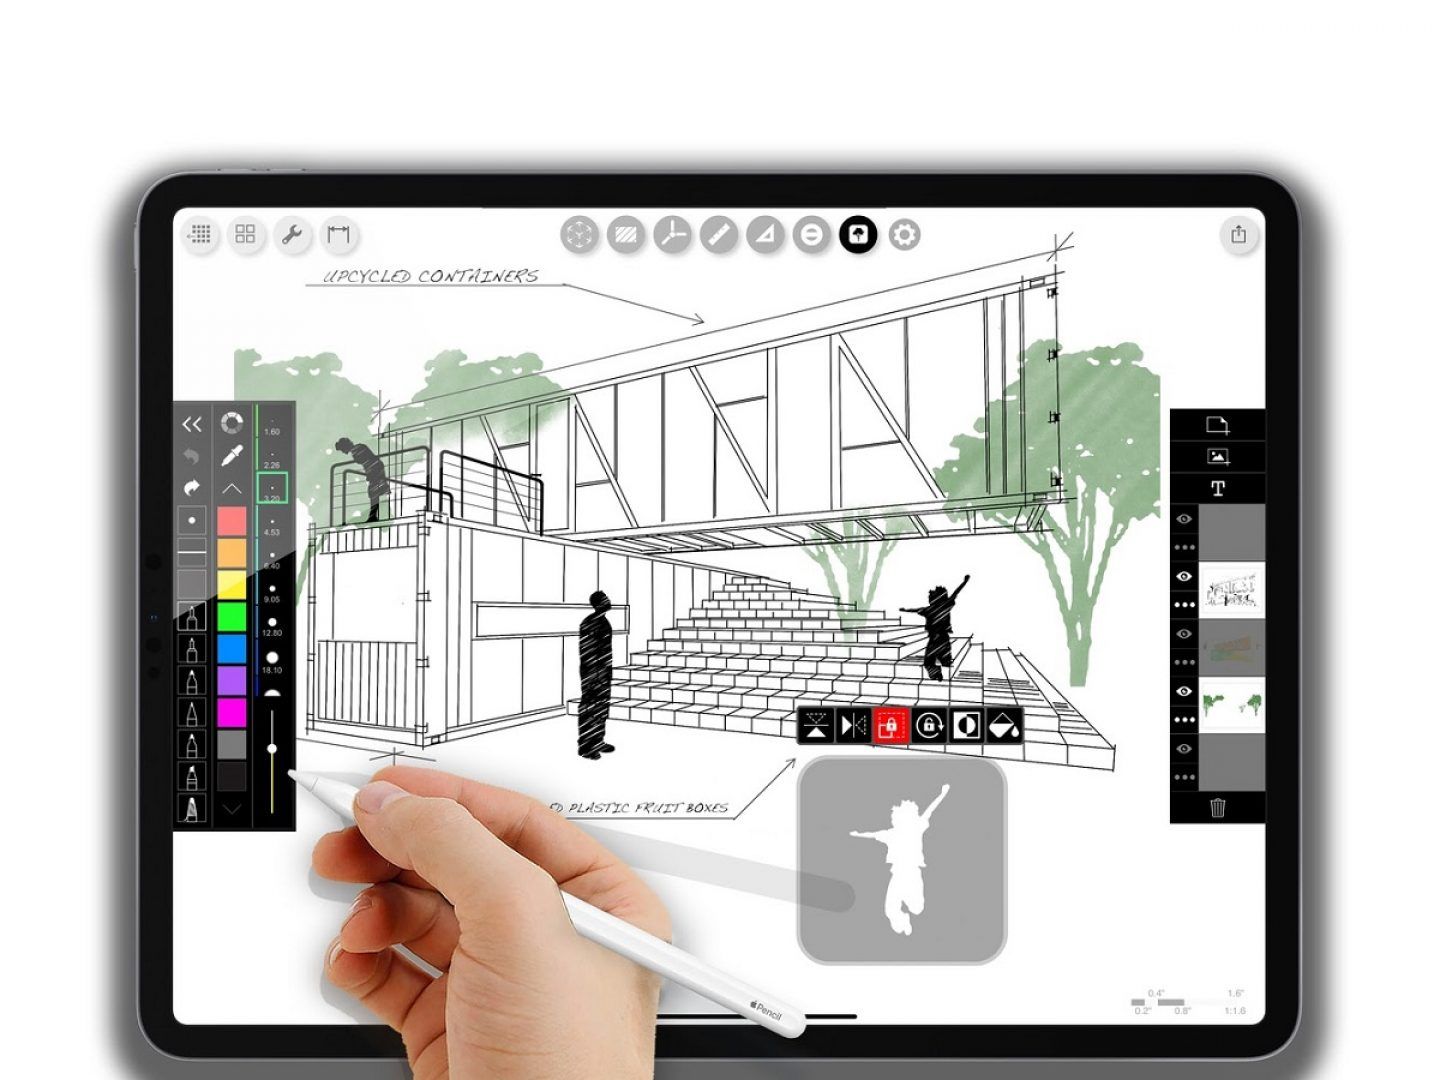 11 ứng dụng vẽ tranh trên Android giúp bạn trở thành một họa sĩ đích thực